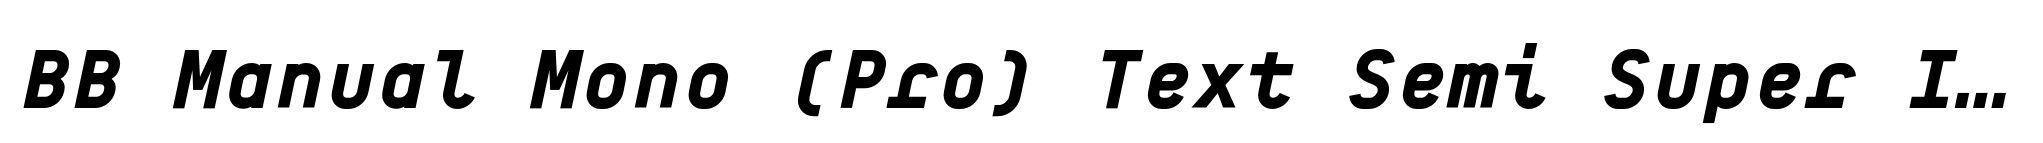 BB Manual Mono (Pro) Text Semi Super Italic image